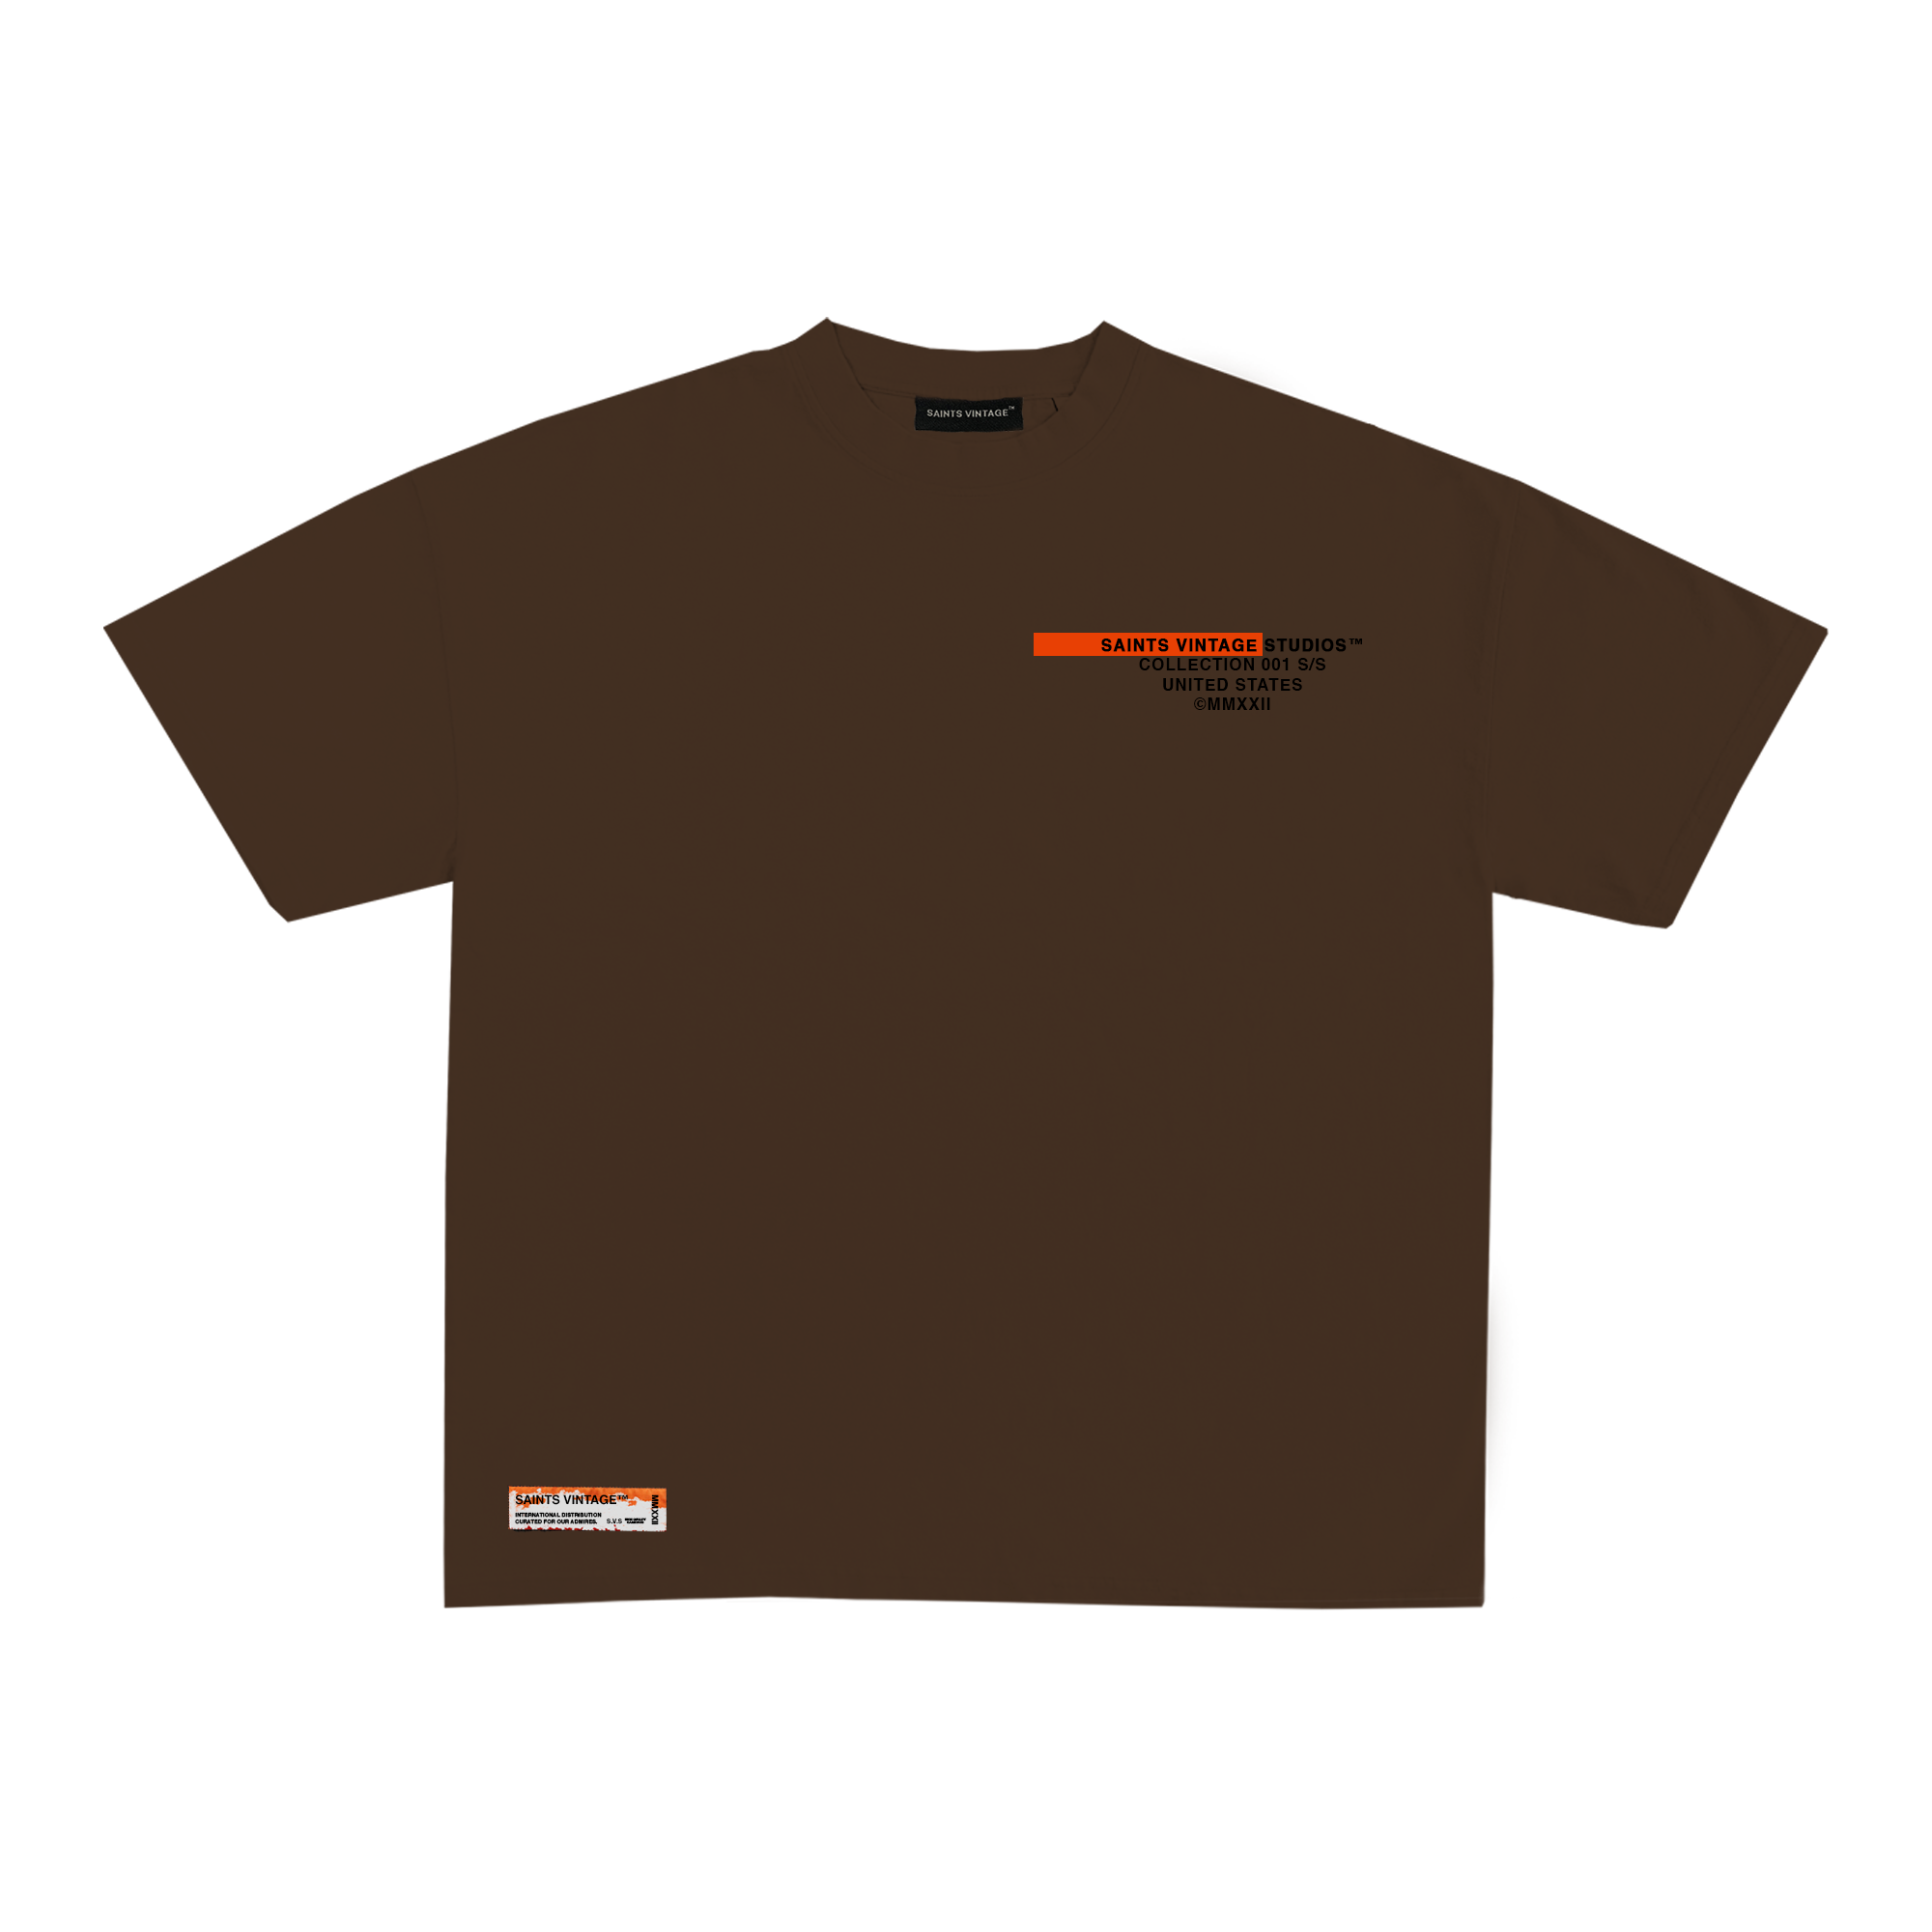 ST. Classic Olive Mocha Brown T-Shirt